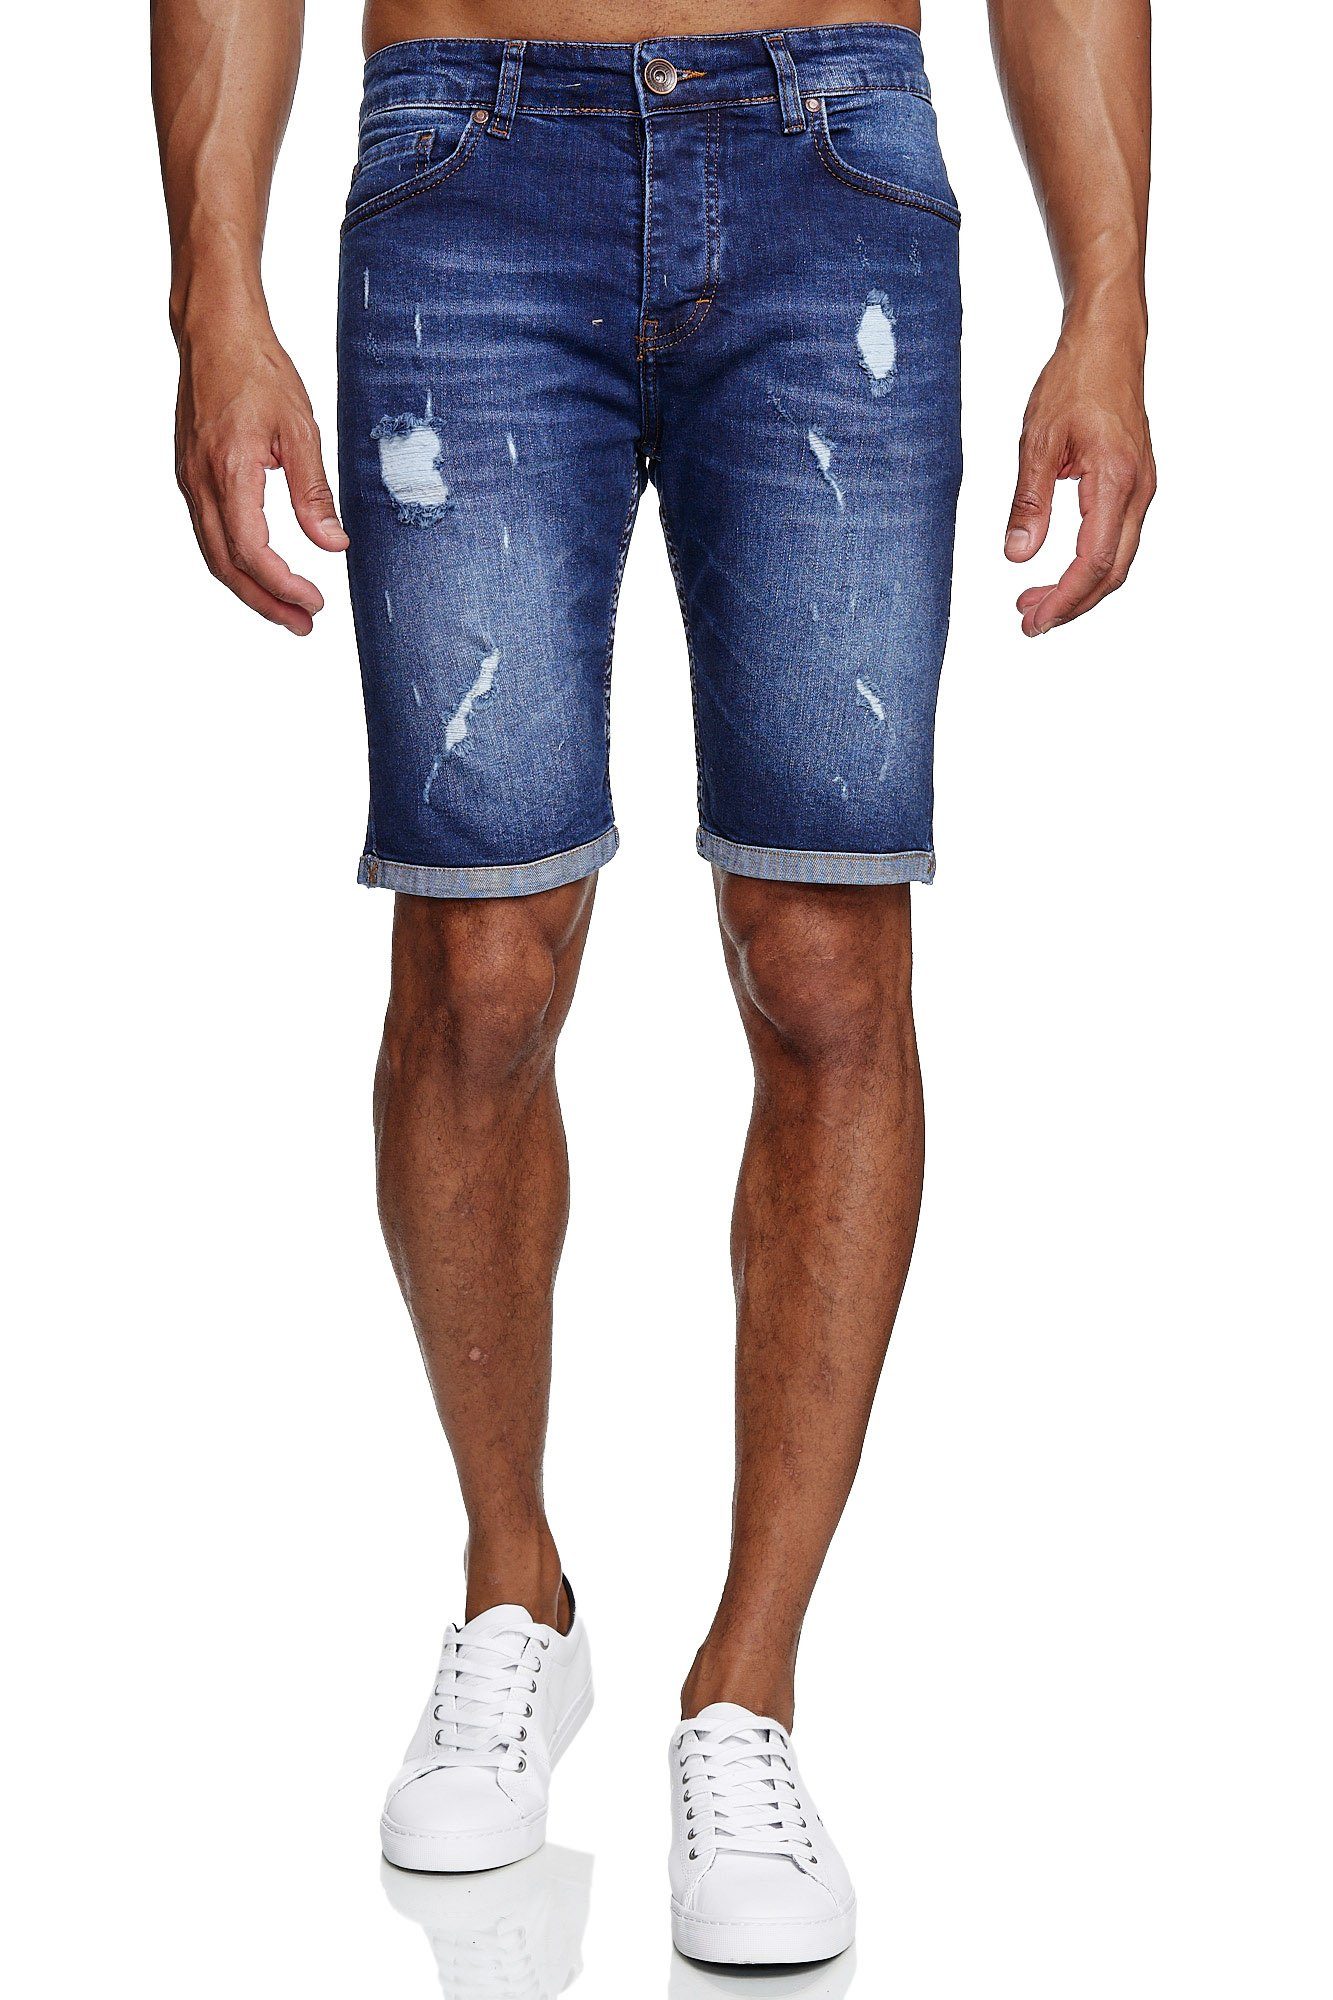 Kurze Jeanshose für Männer Denim Shorts Sommer Vintage Bermuda Hose Waschung 